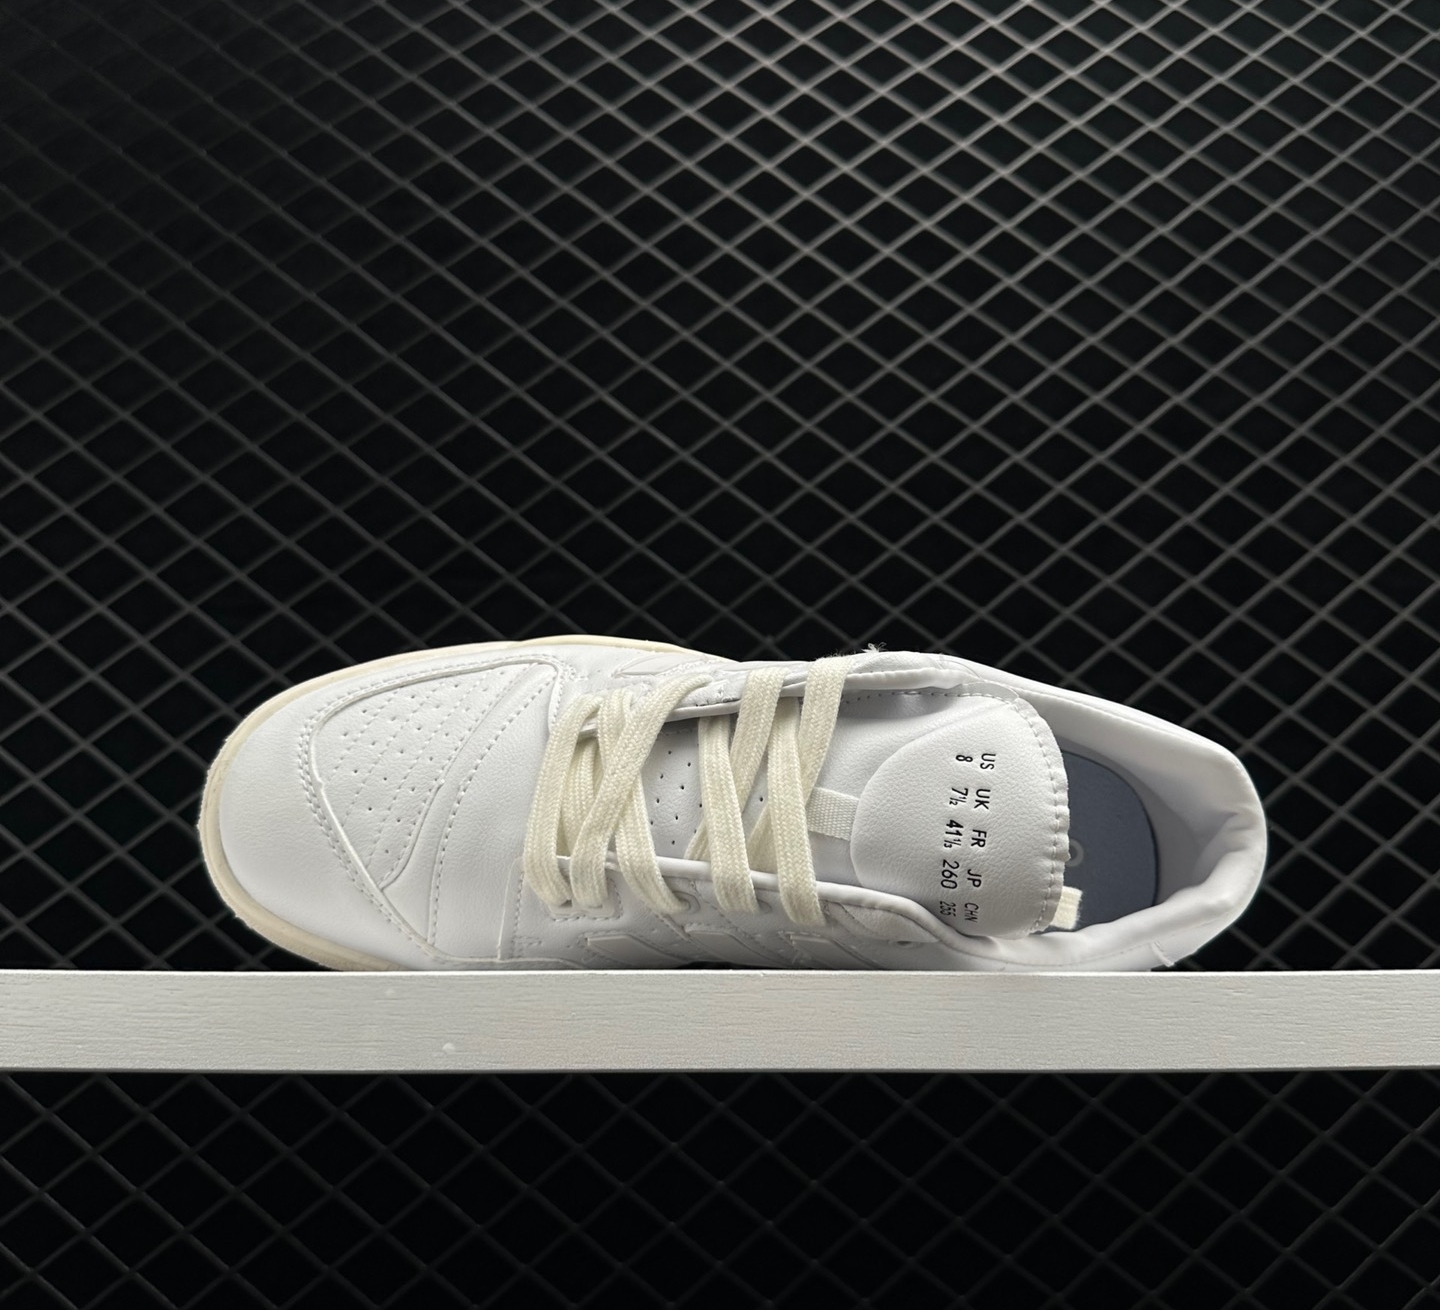 Adidas Originals Torsion Comp 'Cloud White' EE7375 - Shop Online Today!